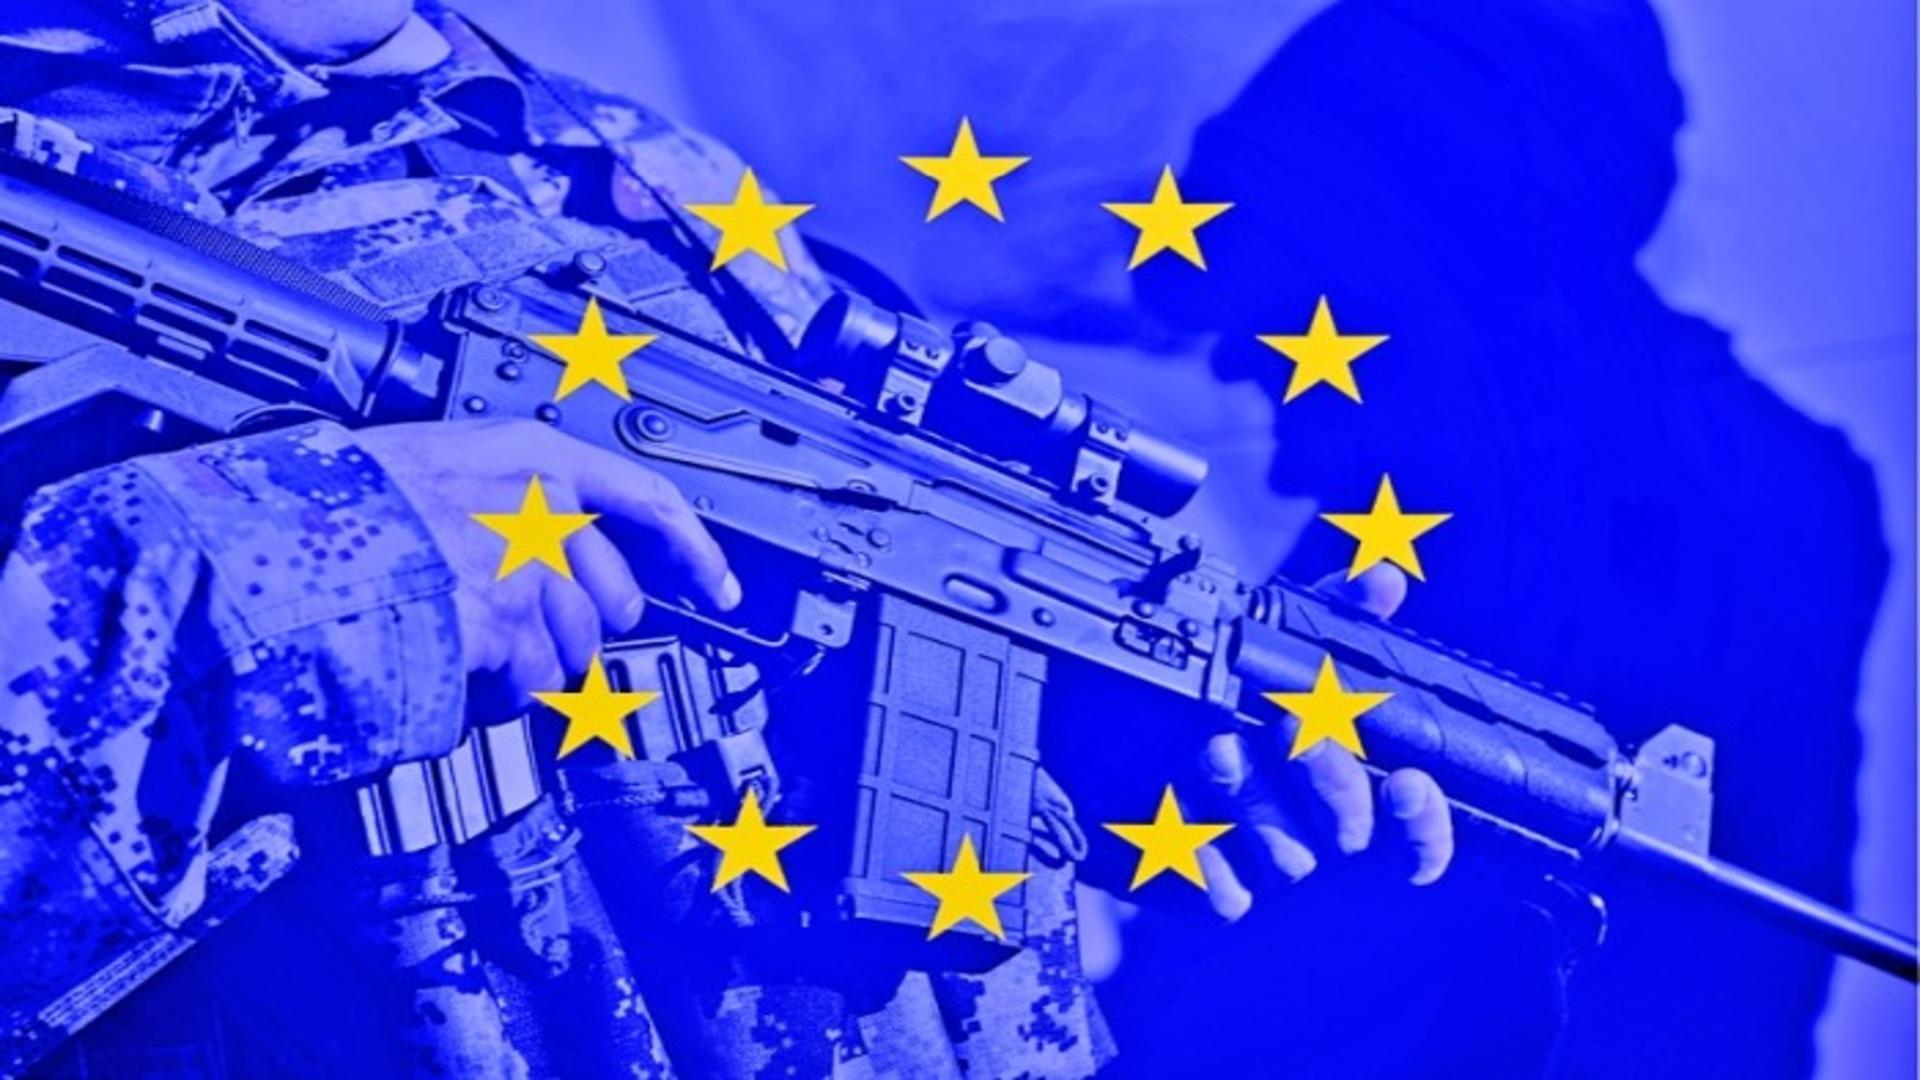 Parlamentul European declanșează procedura de urgență pentru înarmarea țărilor UE: Vot pentru creșterea producției europene de muniție și rachete